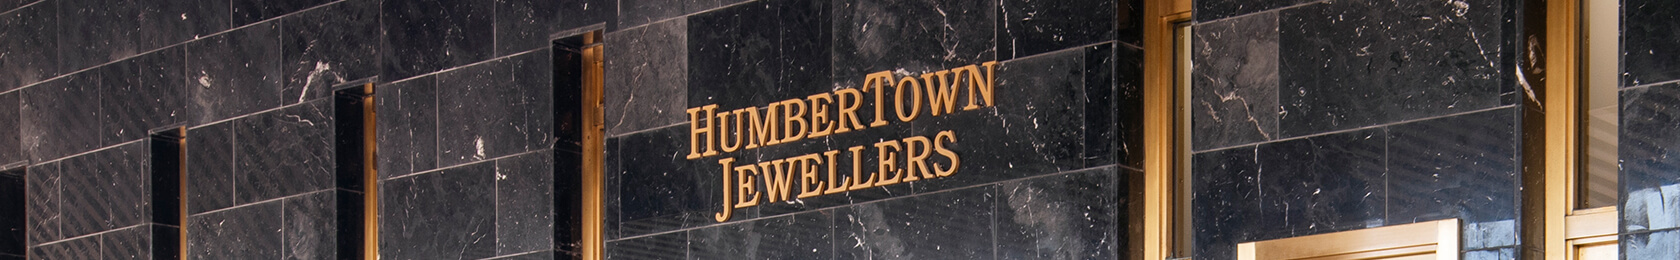 Humbertown Jewellers Rolex Team